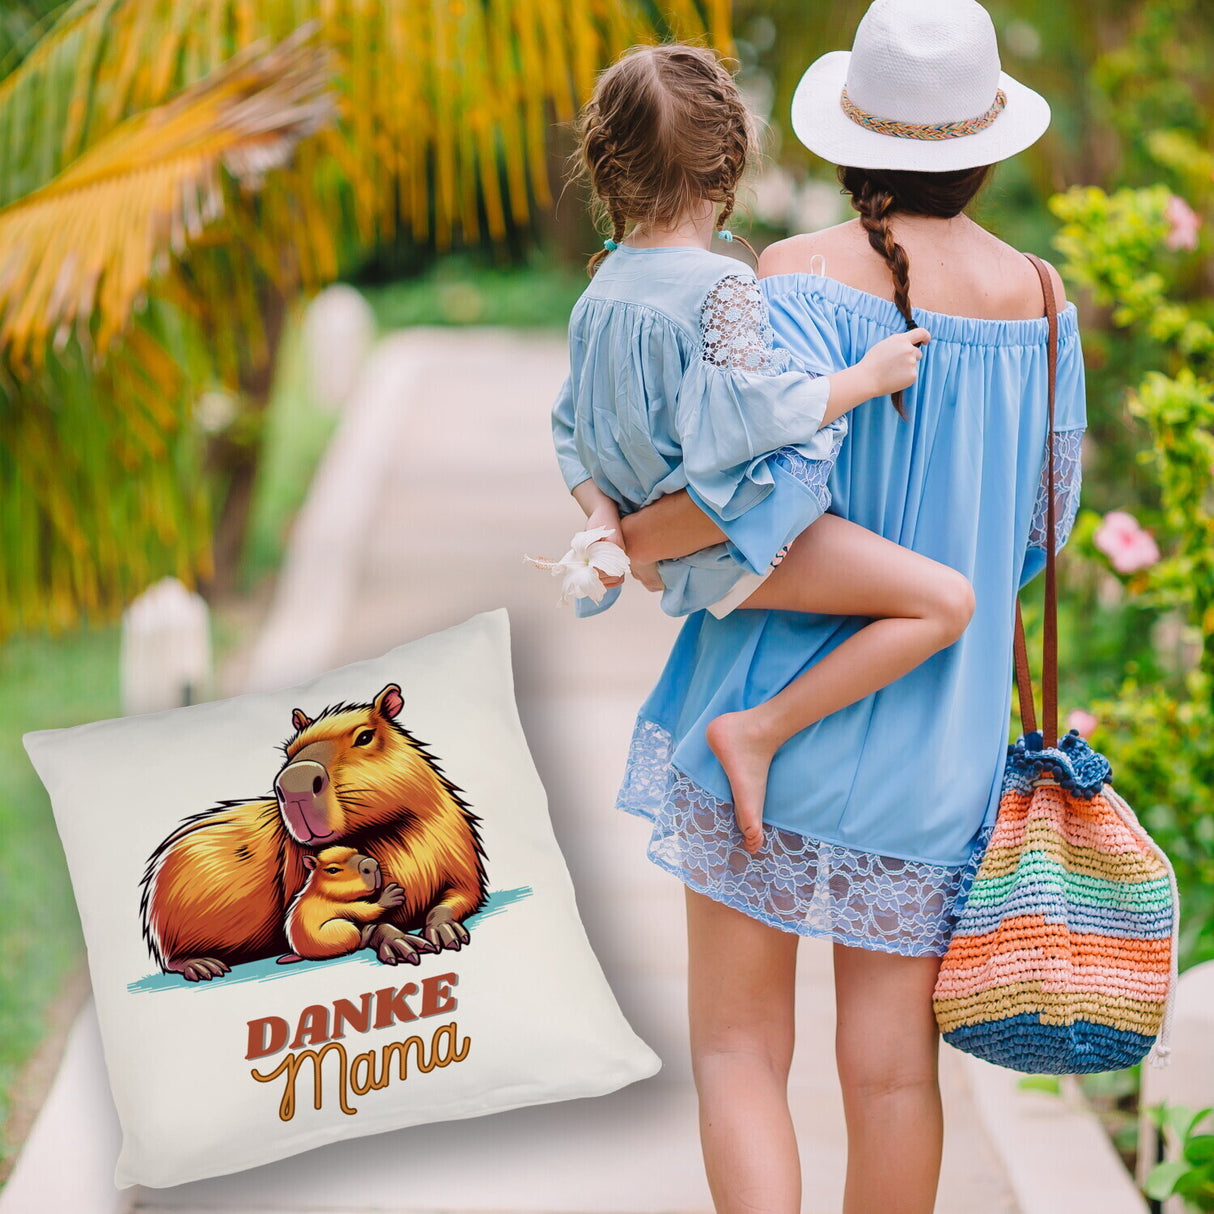 Capybara Mama und Kind Kissen mit Spruch Danke Mama